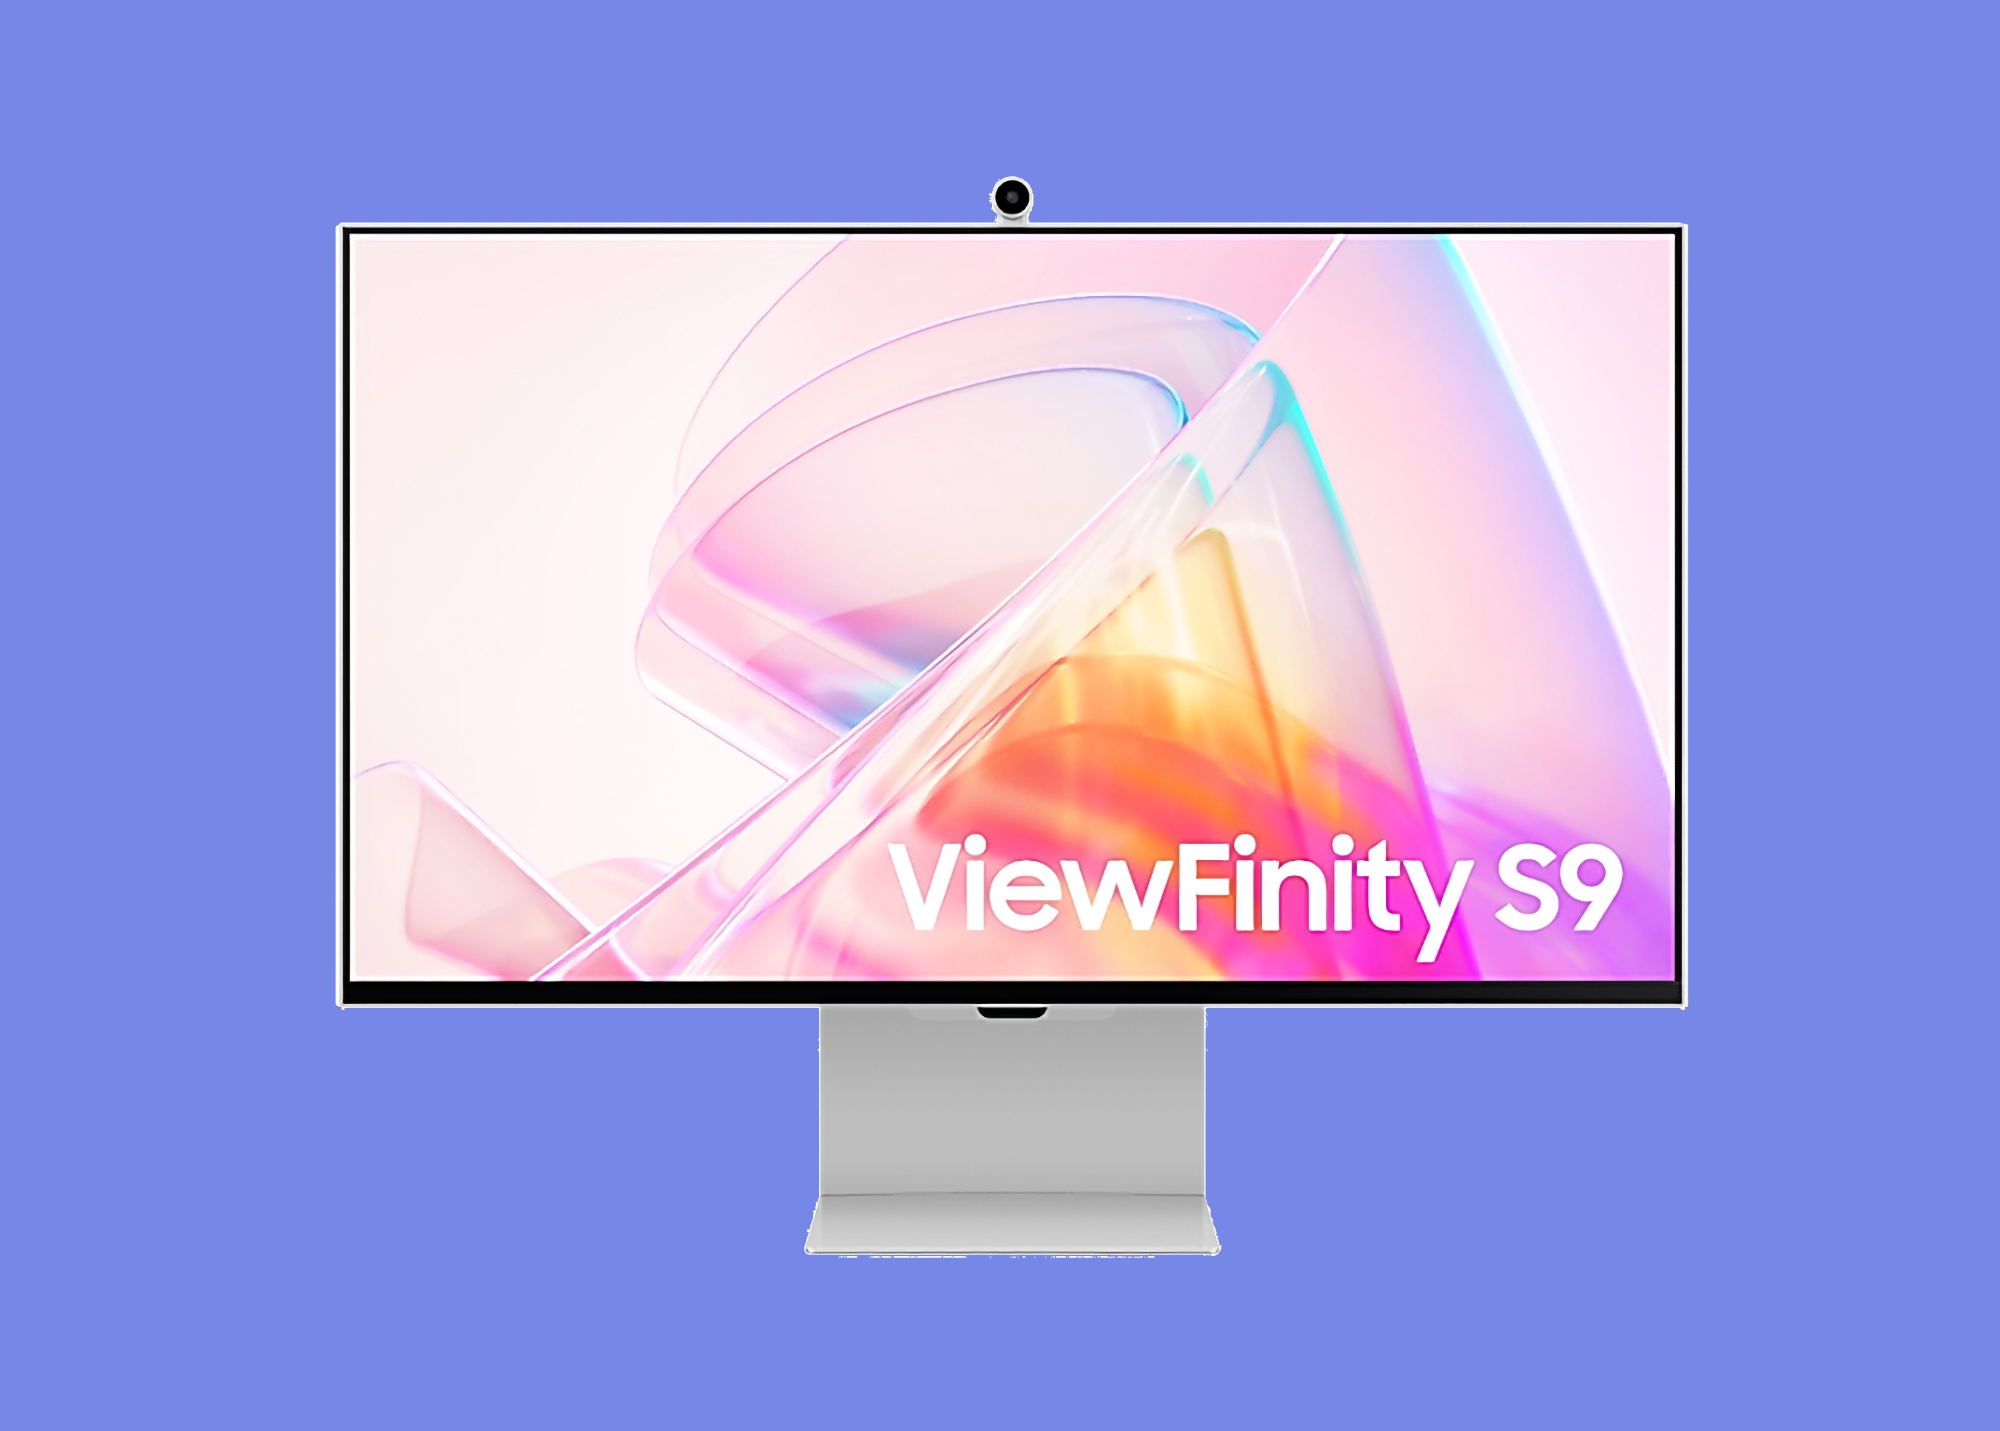 Rabatten er på $704: Samsung ViewFinity S9 med mat skærm, webcam og Tizen TV OS er tilgængelig på Amazon til en kampagnepris 